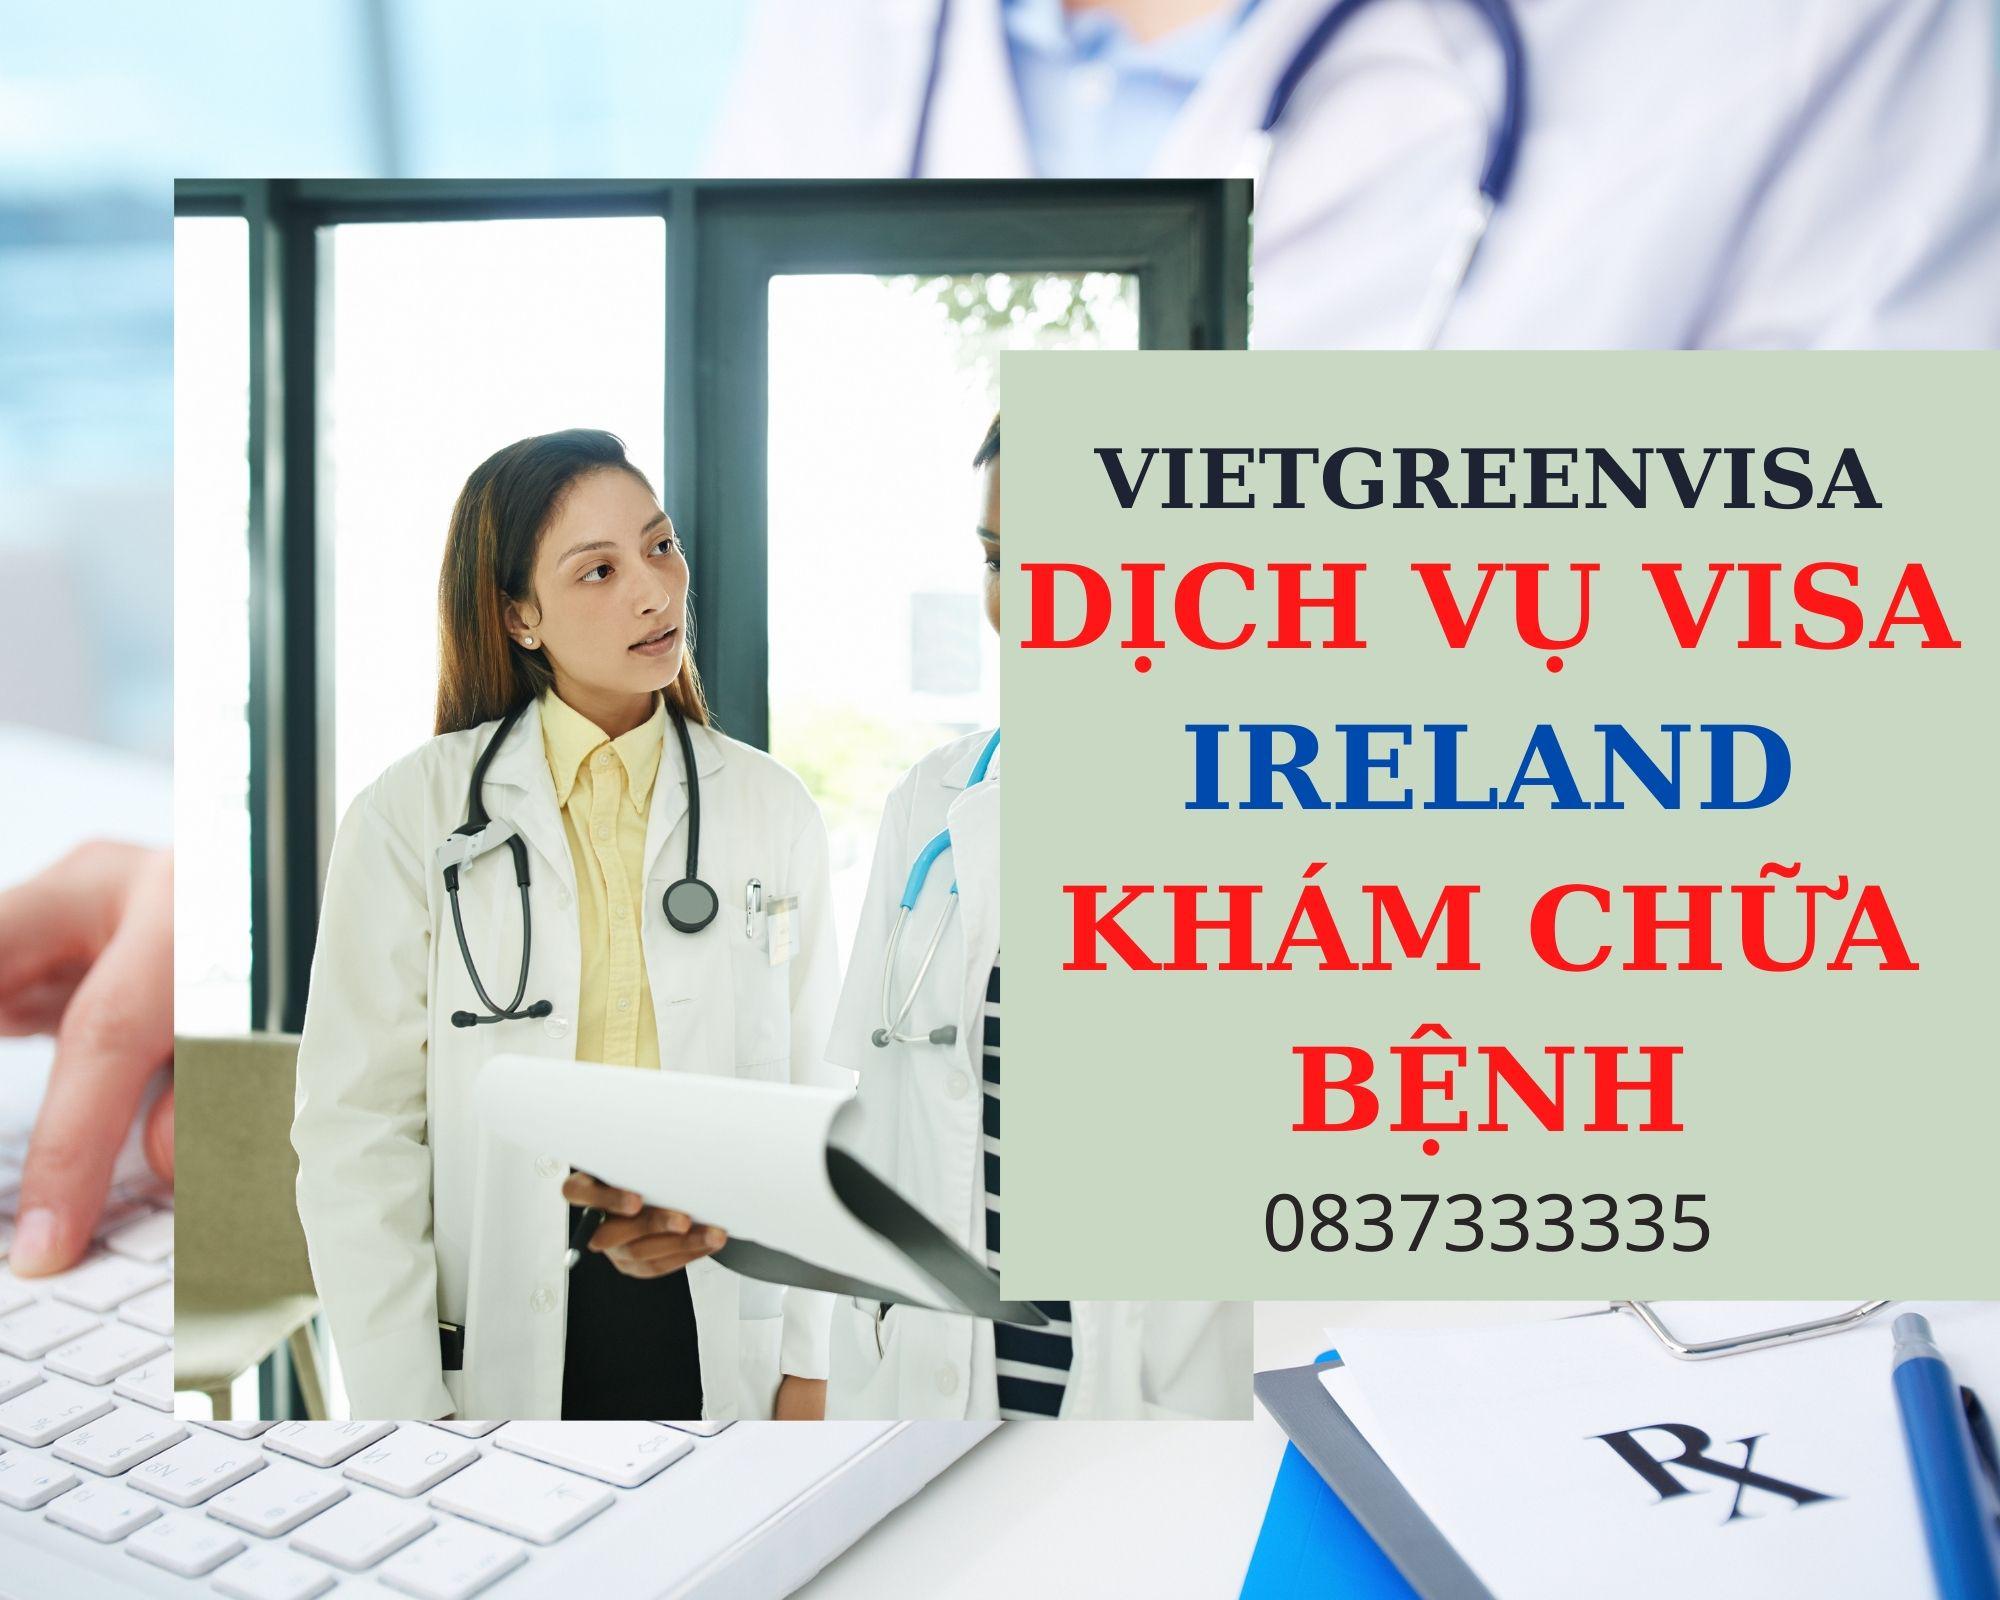 Thủ tục làm visa đi Ireland khám chữa bệnh nhanh gọn